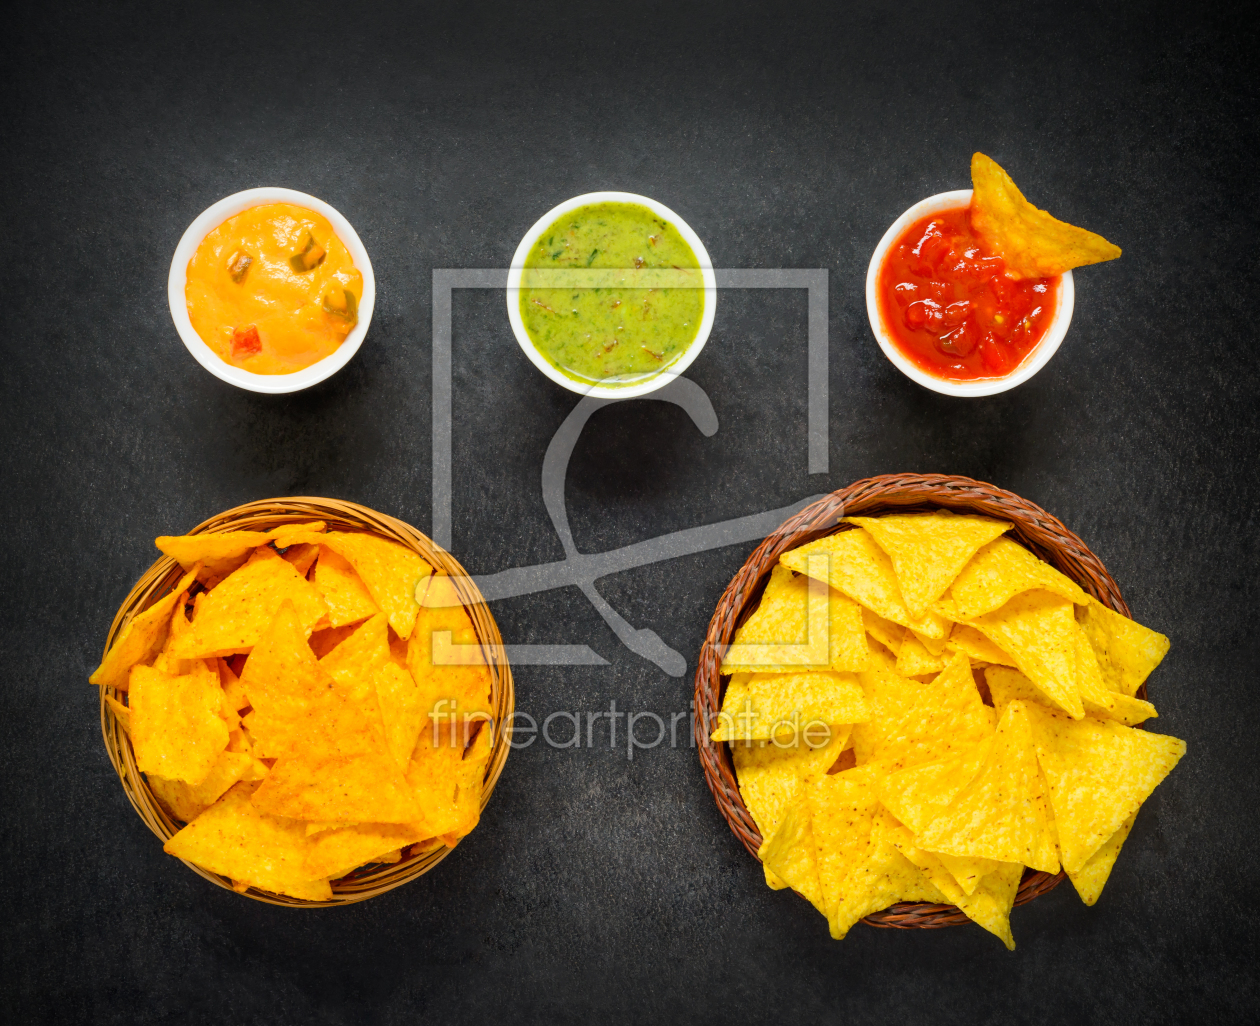 Bild-Nr.: 11912404 Tortilla Chips mit Saucen erstellt von xfotostudio